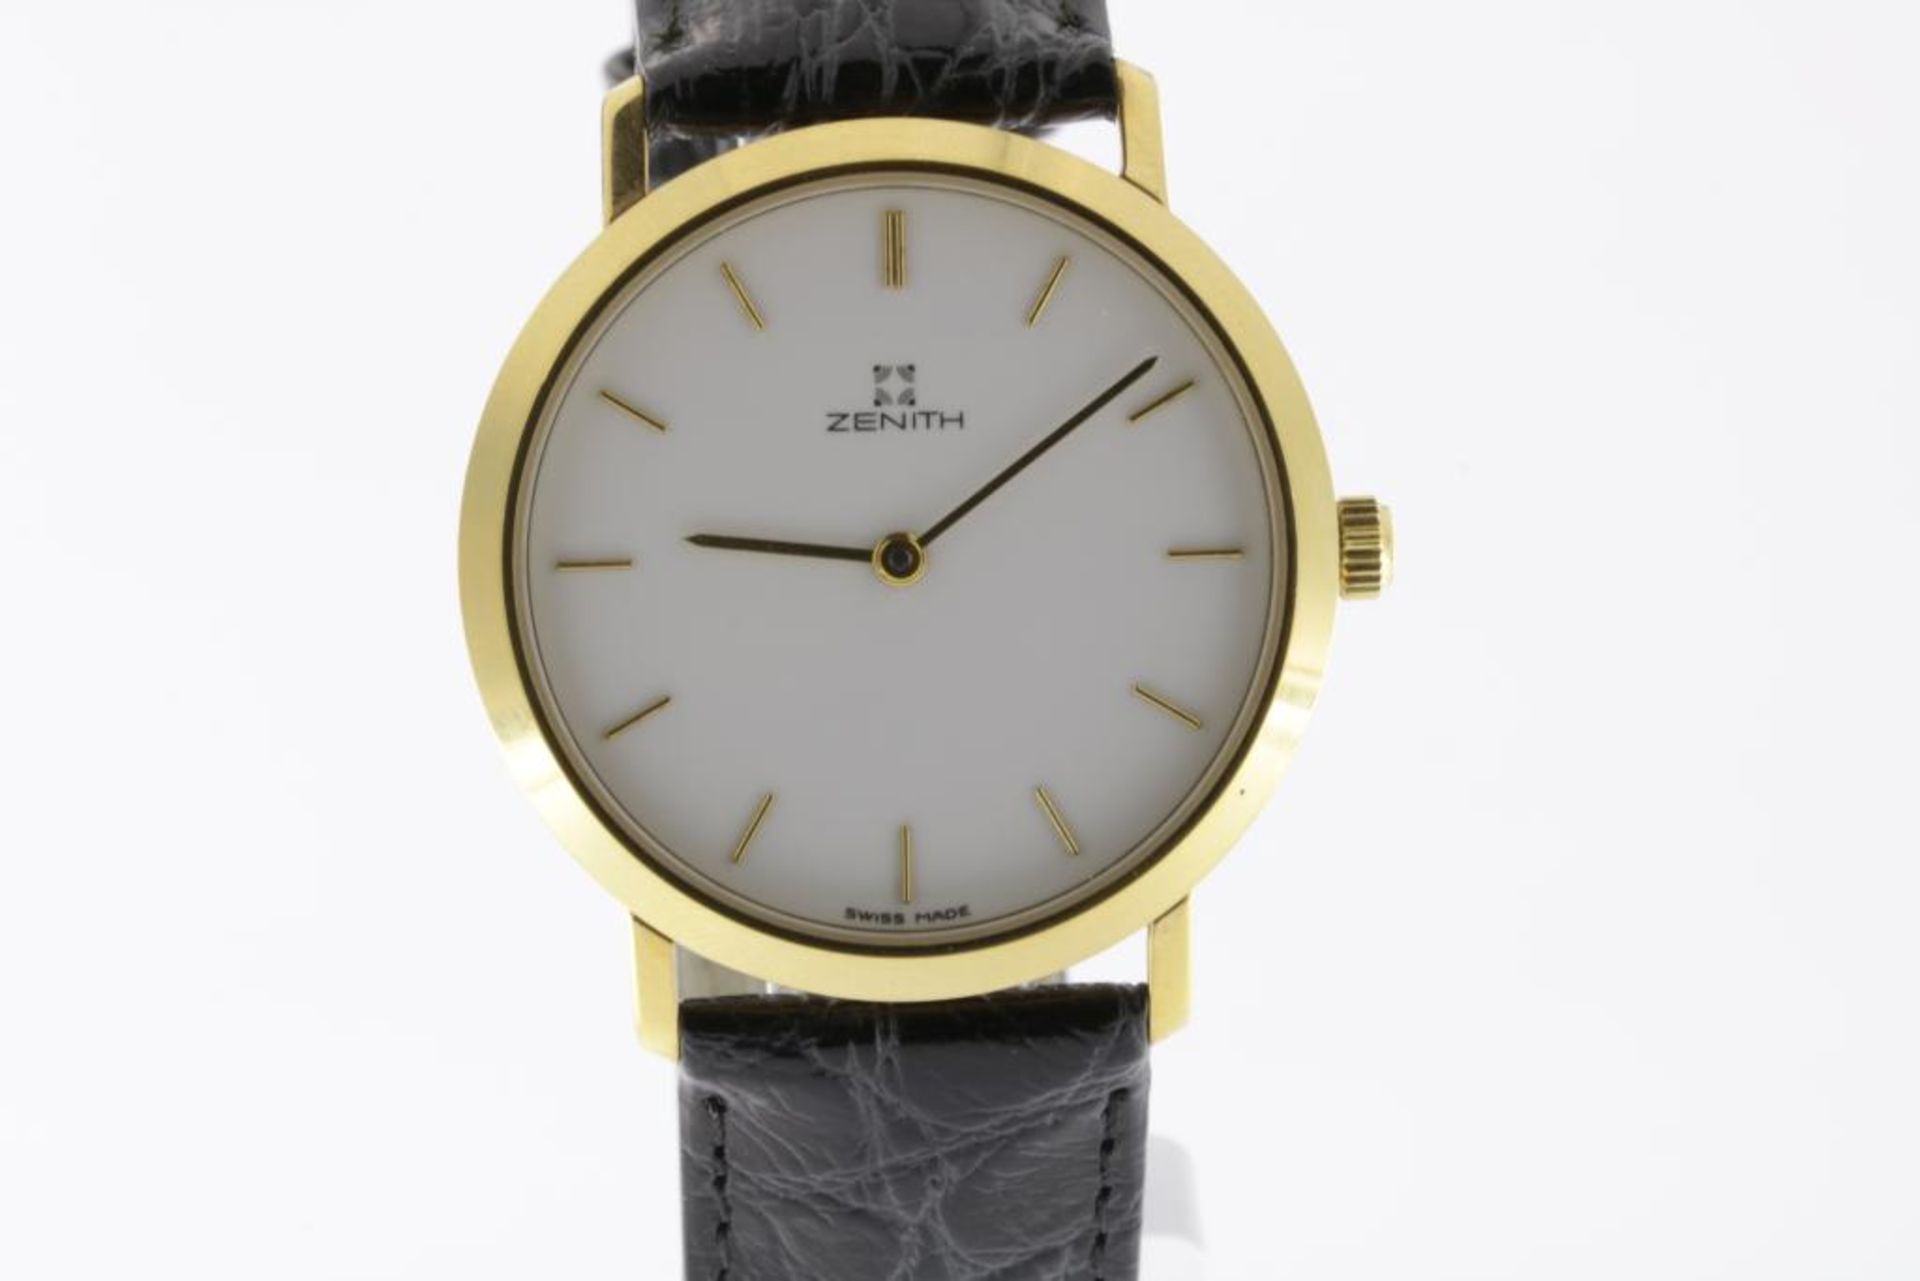 Zenith horloge met zwartlederen band, in origineel etui